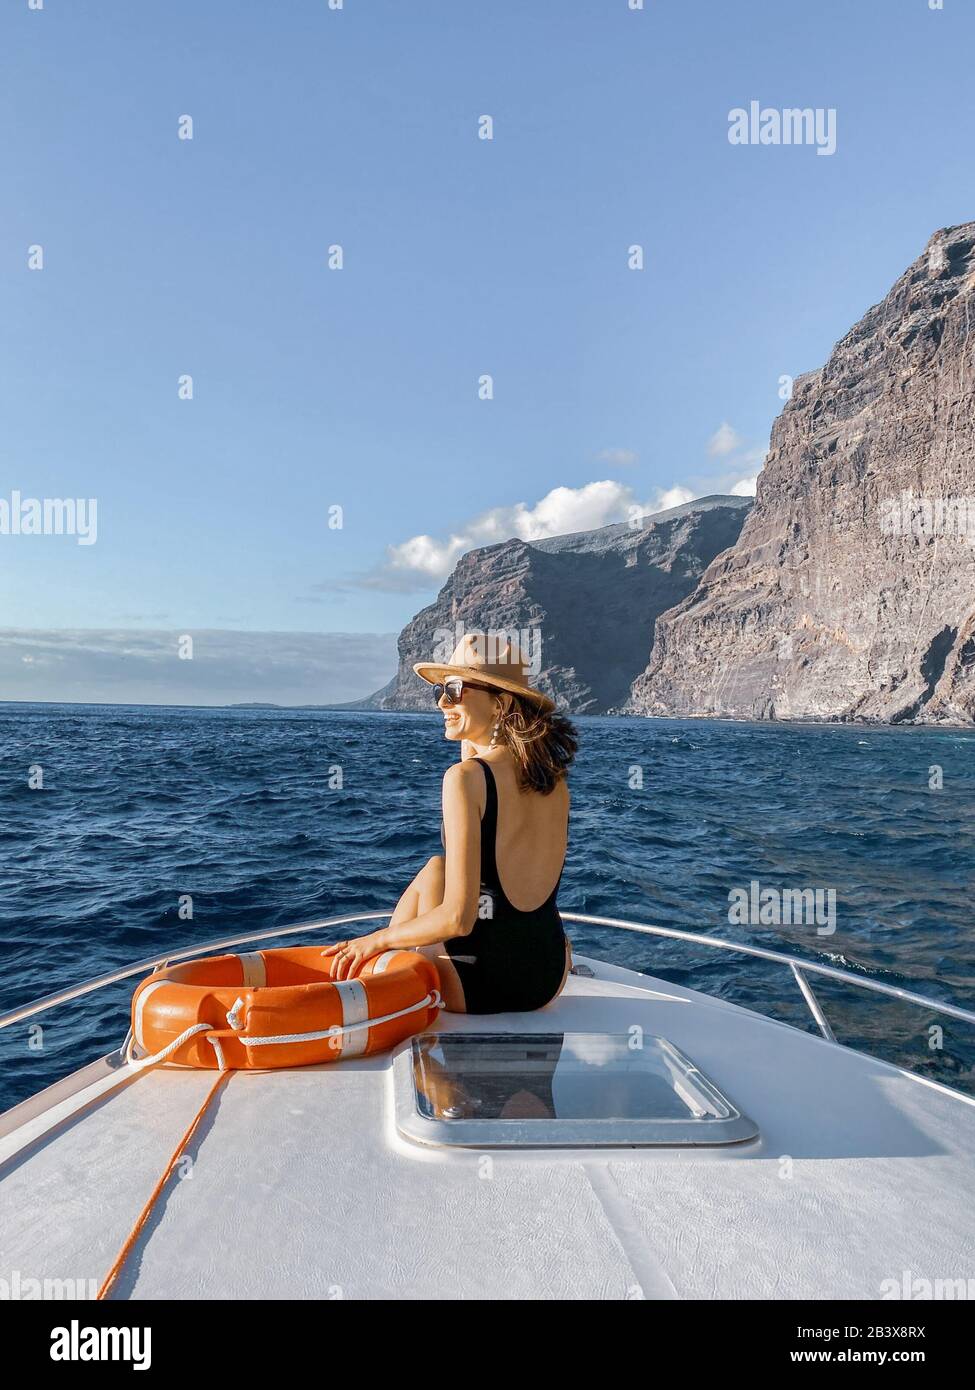 Donna che gode di un viaggio in oceano seduto con la lifebuoy sul naso dello yacht mentre naviga vicino alla costa rocciosa mozzafiato su un tramonto. Immagine realizzata sul telefono cellulare Foto Stock